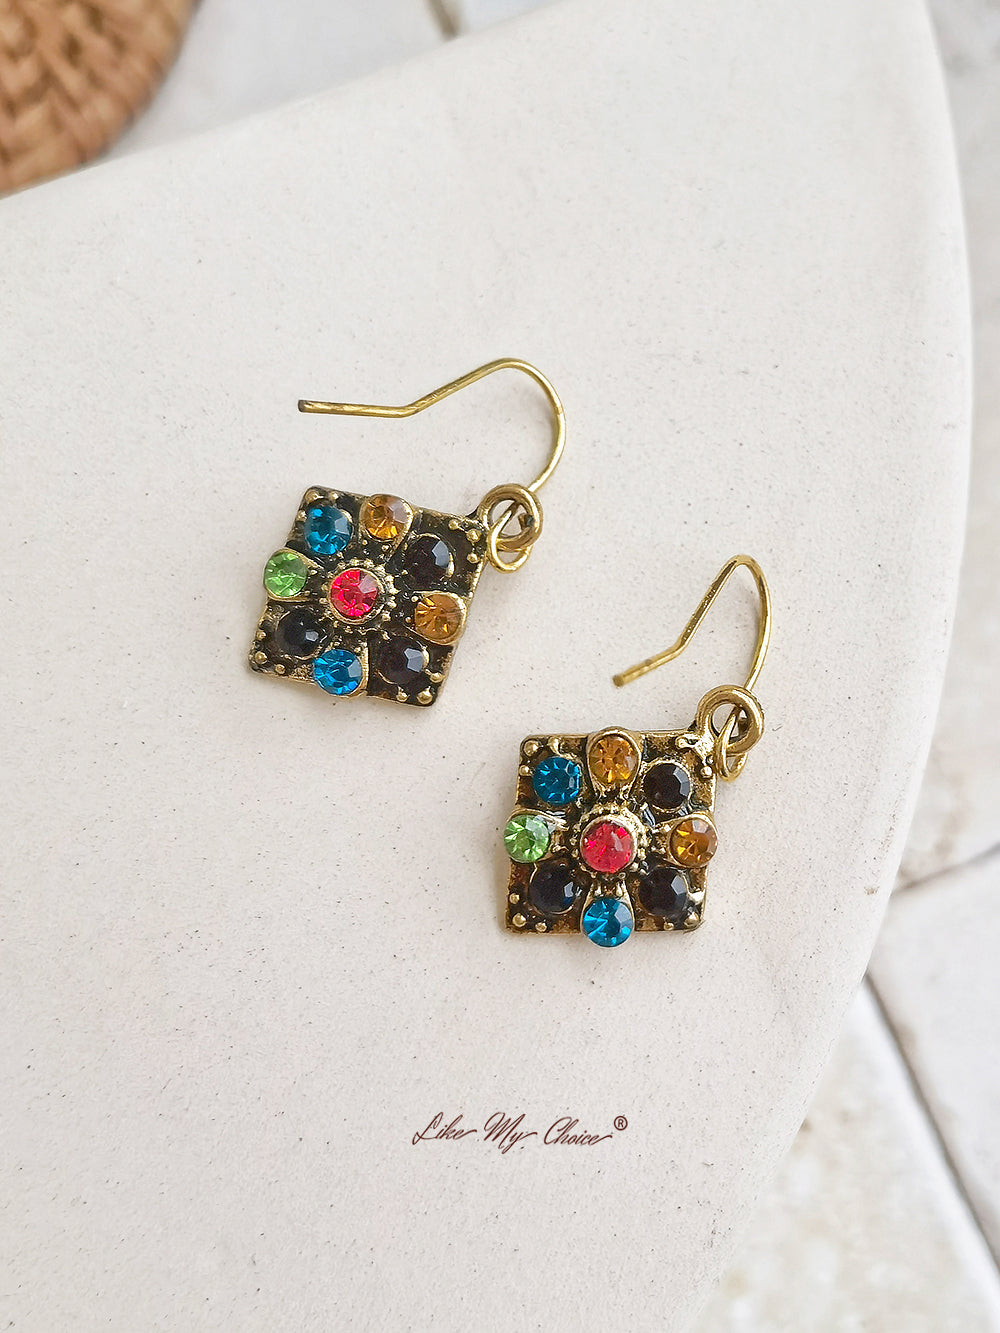 Small colorful boho earrings